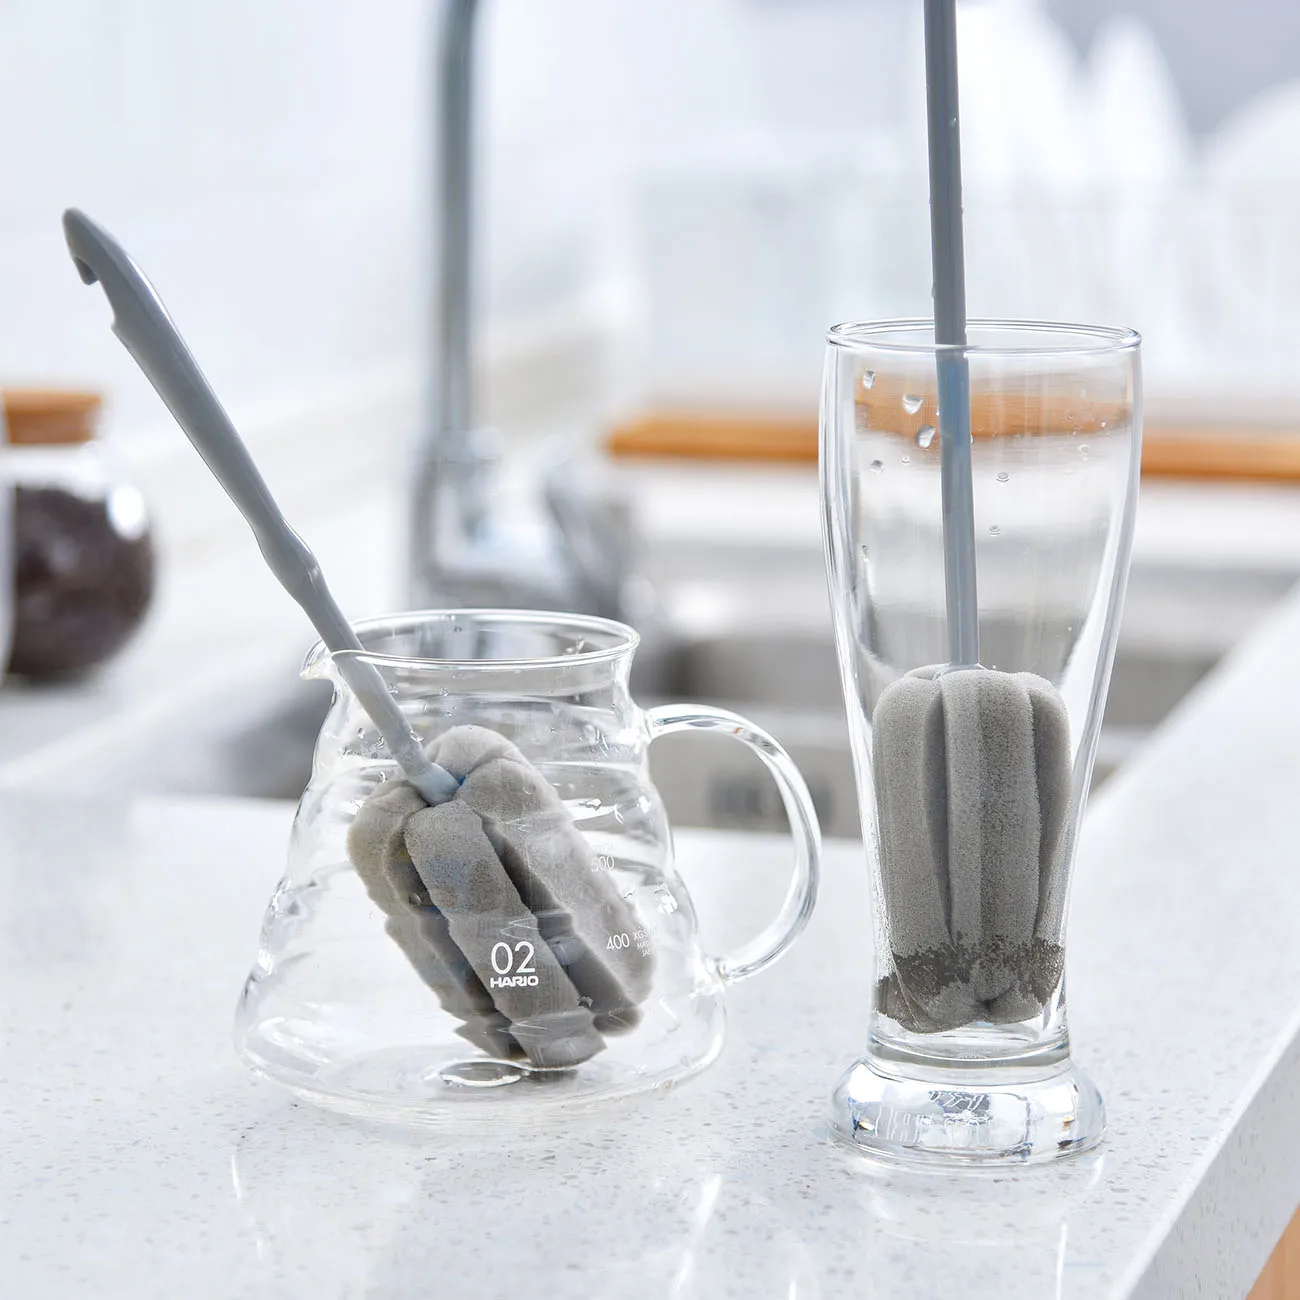 1 шт. длинная ручка для губки бутылки молока чашка стеклянный кухонный спонж для чистки посуды Инструменты для очистки чашки щетки чистящие